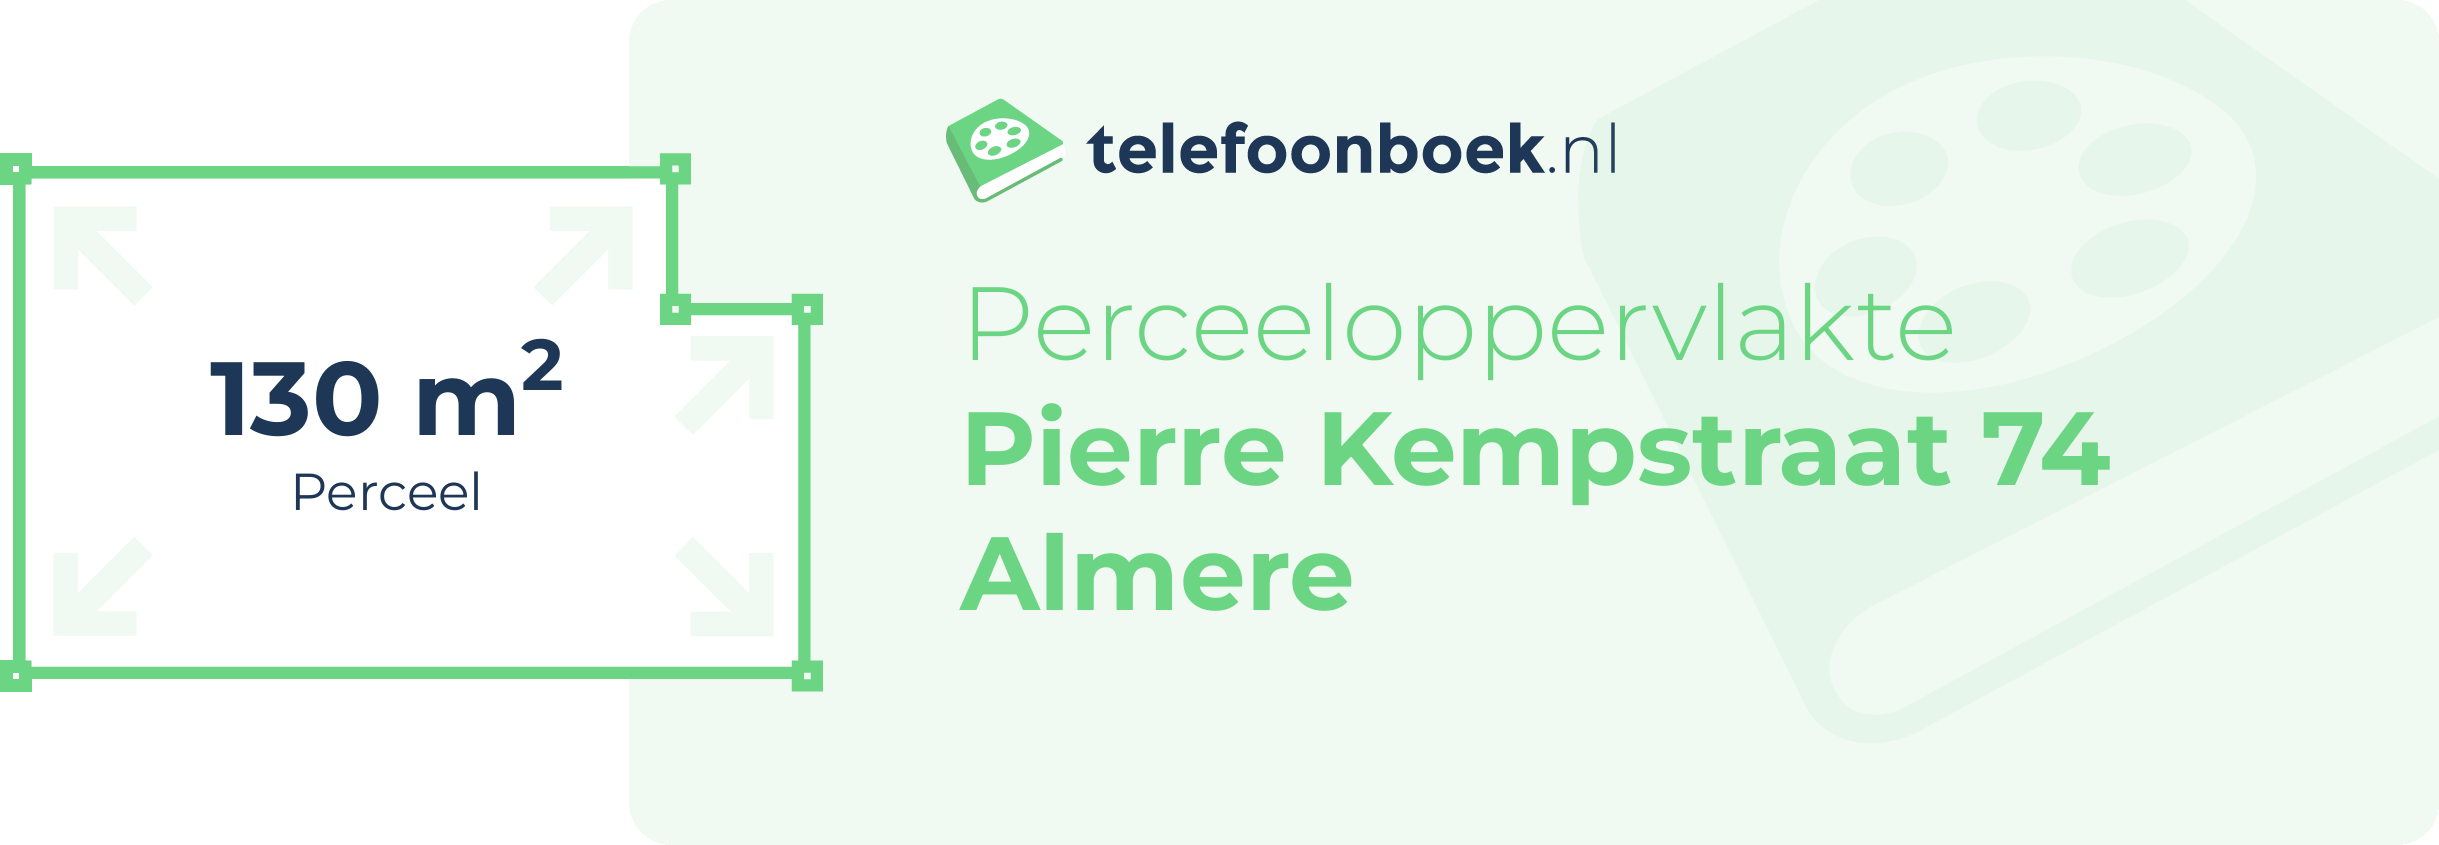 Perceeloppervlakte Pierre Kempstraat 74 Almere